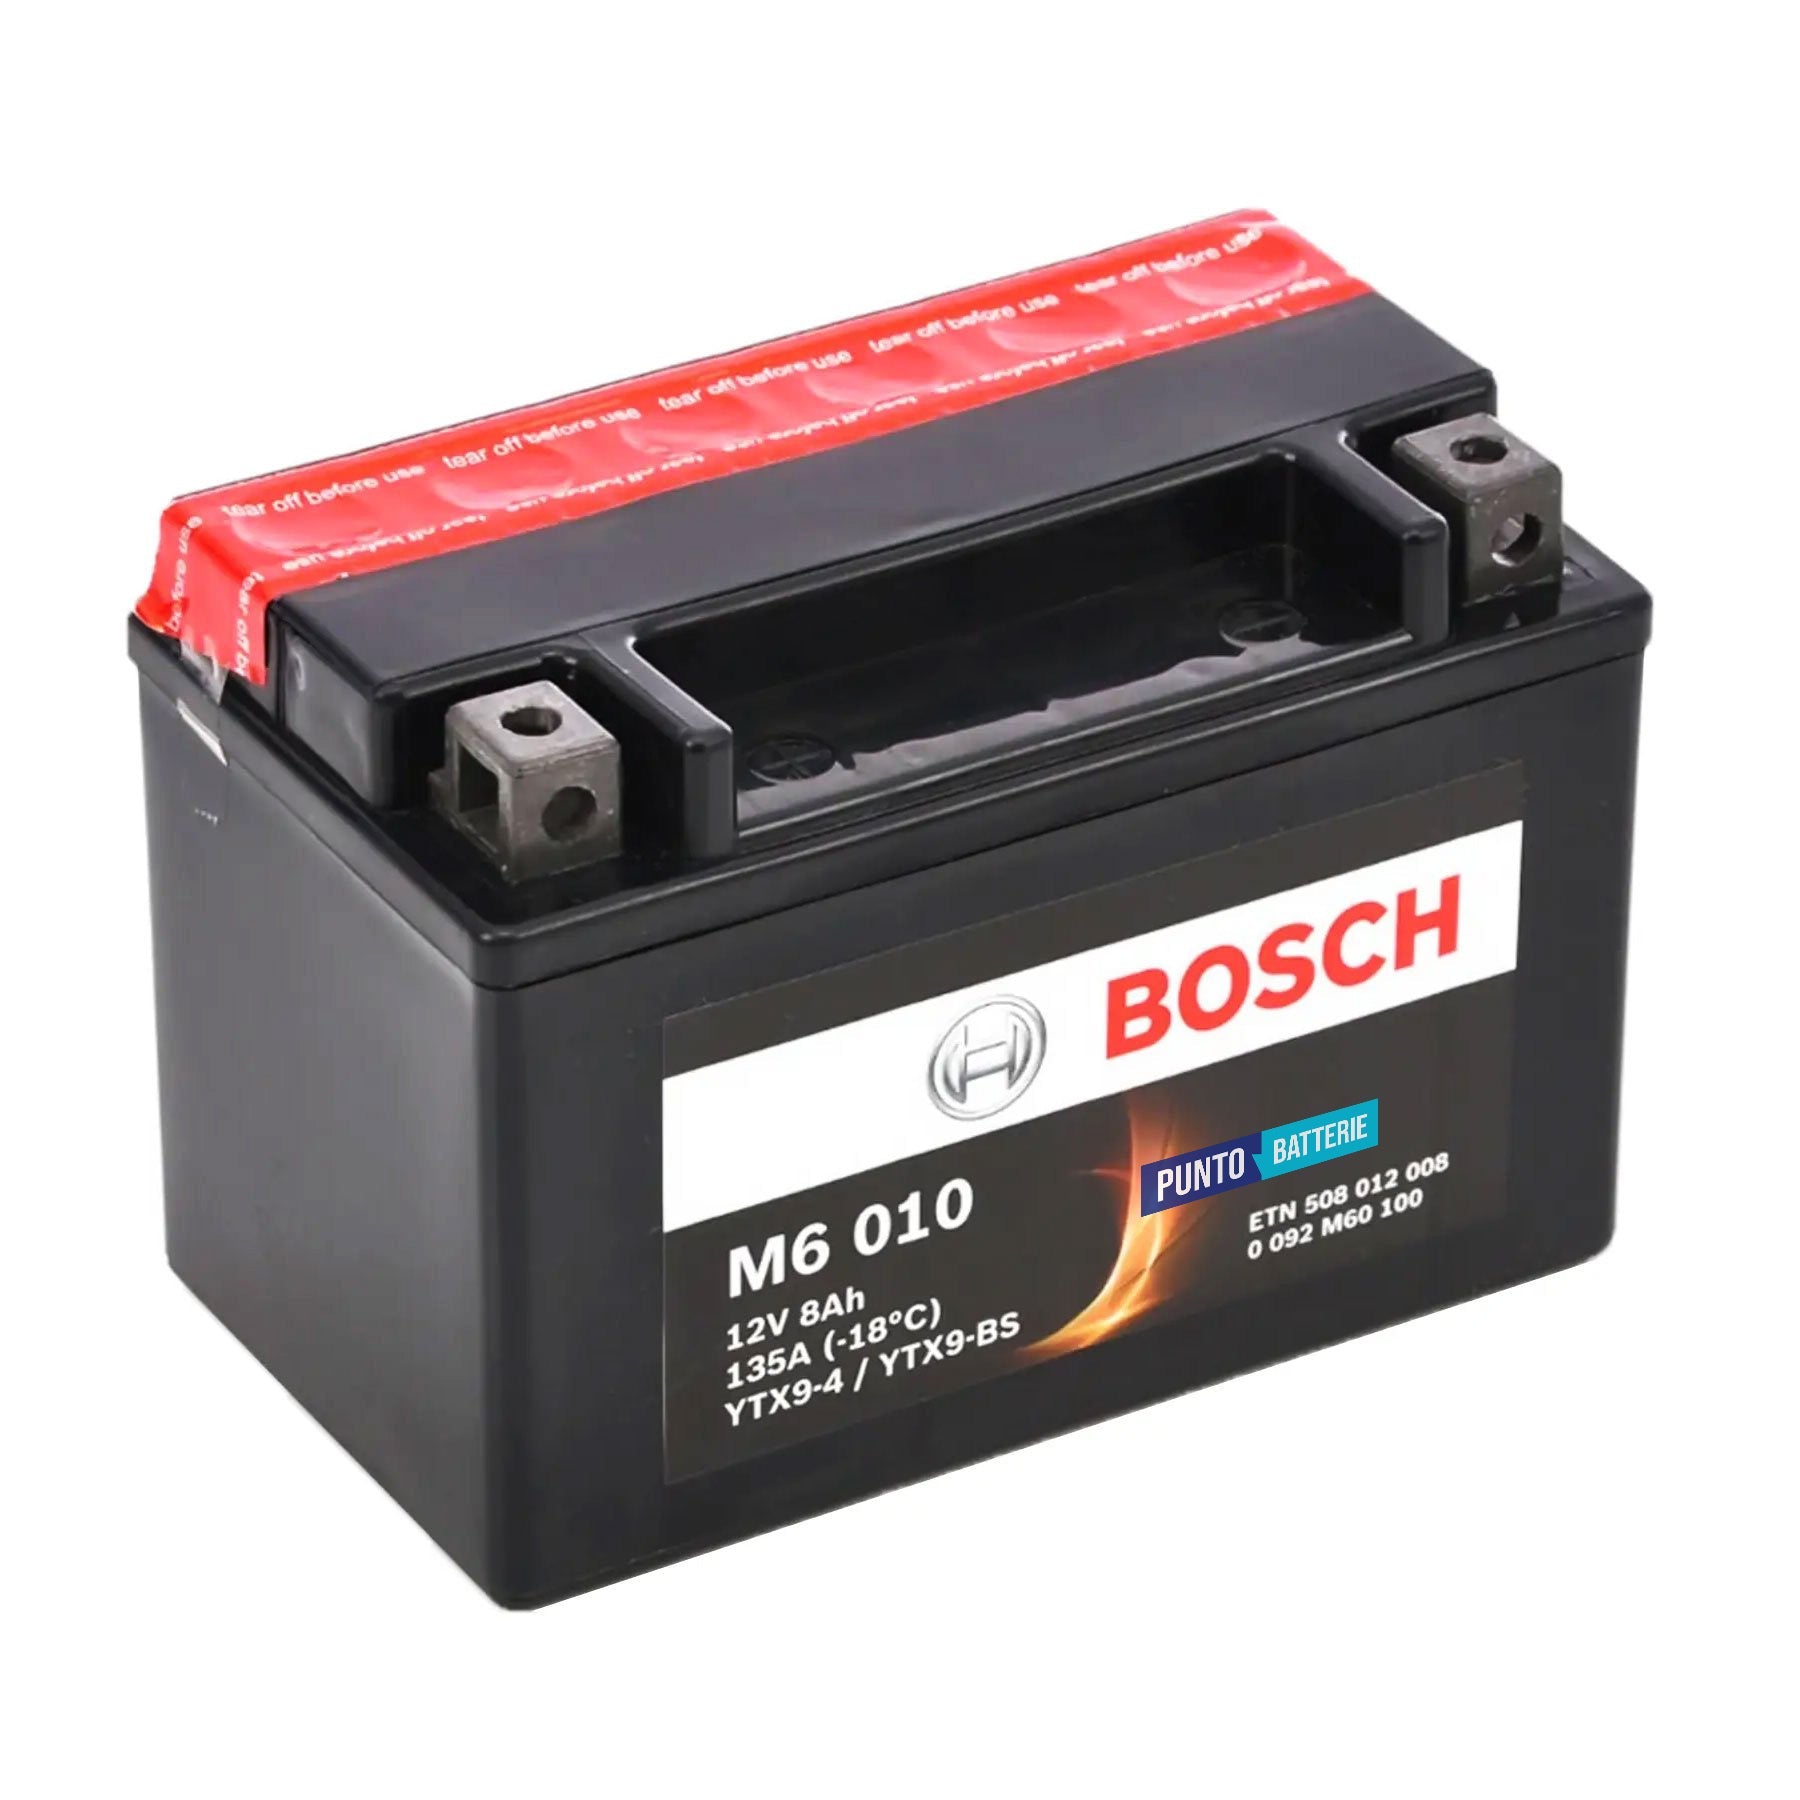 Batteria originale Bosch M6 M6010, dimensioni 150 x 87 x 105, polo positivo a sinistra, 12 volt, 8 amperora, 135 ampere. Batteria per moto, scooter e powersport.